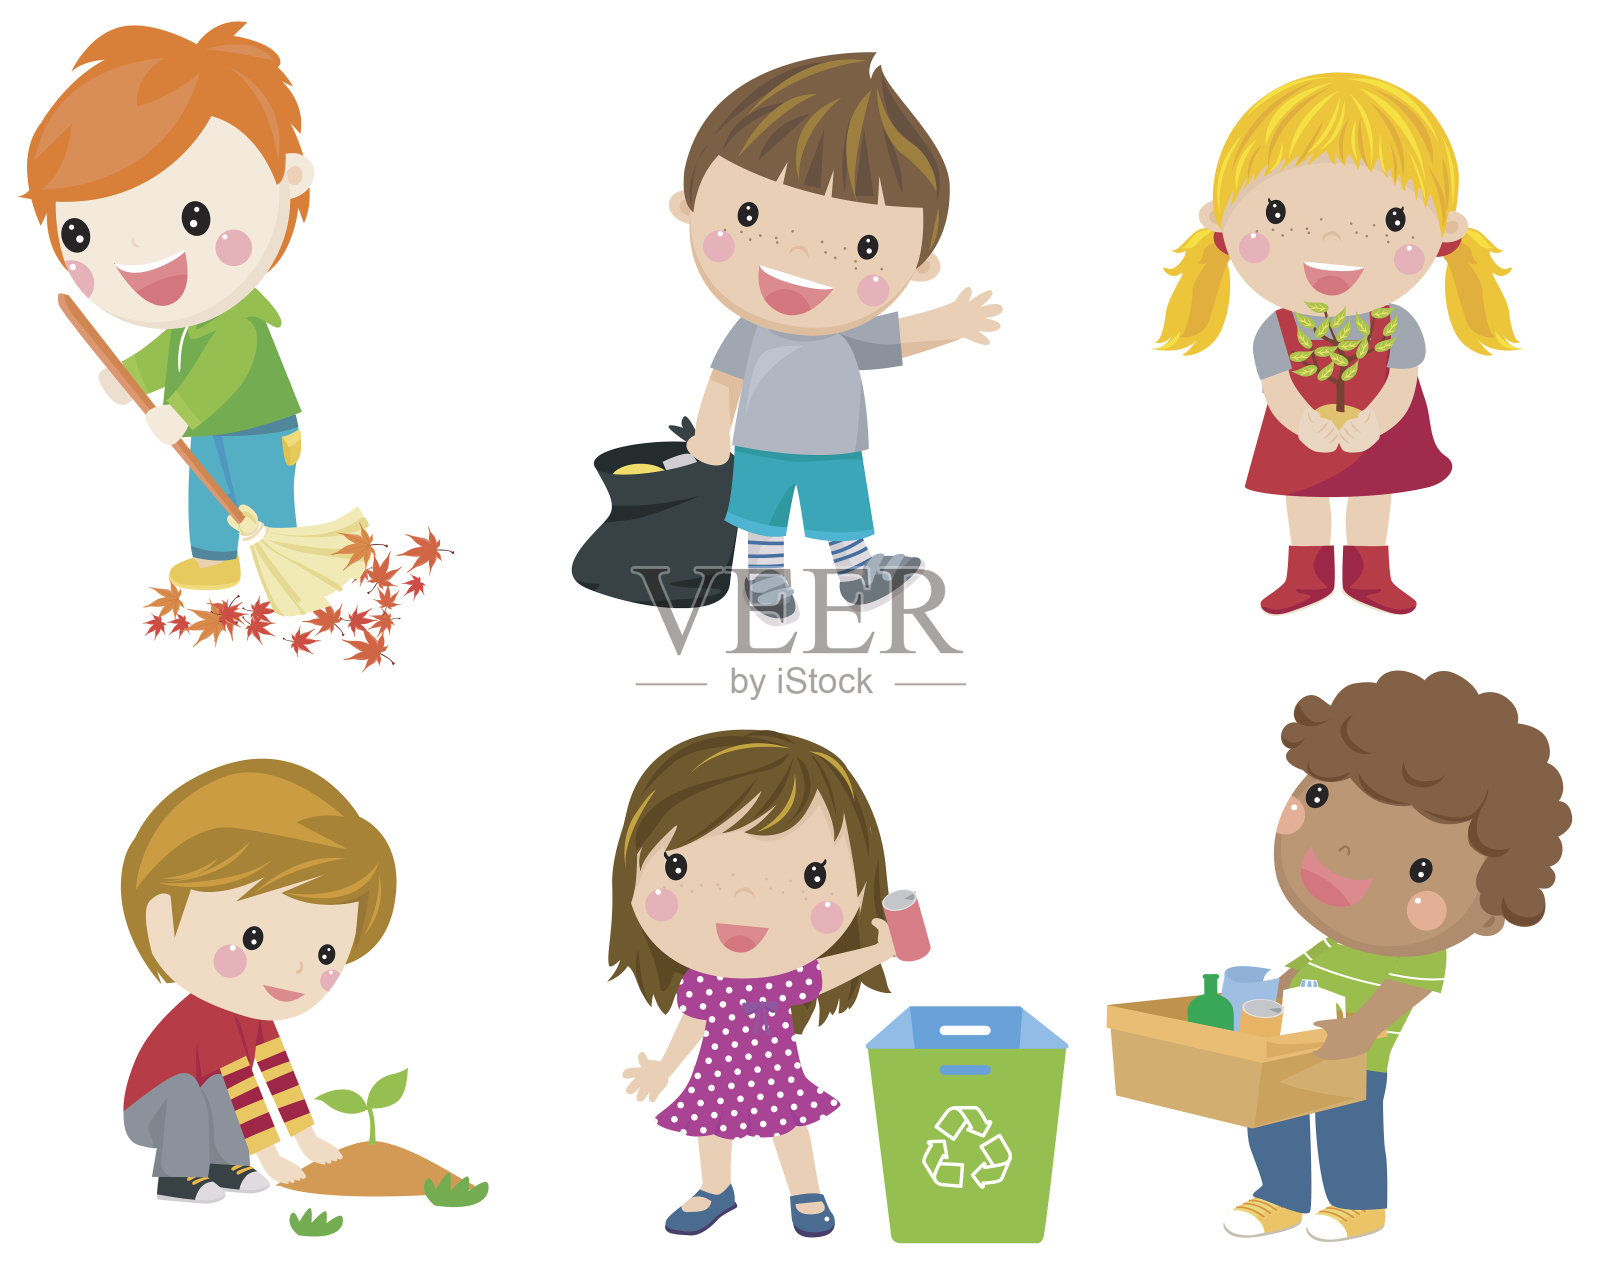 拯救地球。废物回收利用。孩子们种植小树。女孩用喷壶浇花。孩子们收集塑料瓶供回收利用。白色背景隔离设计元素图片